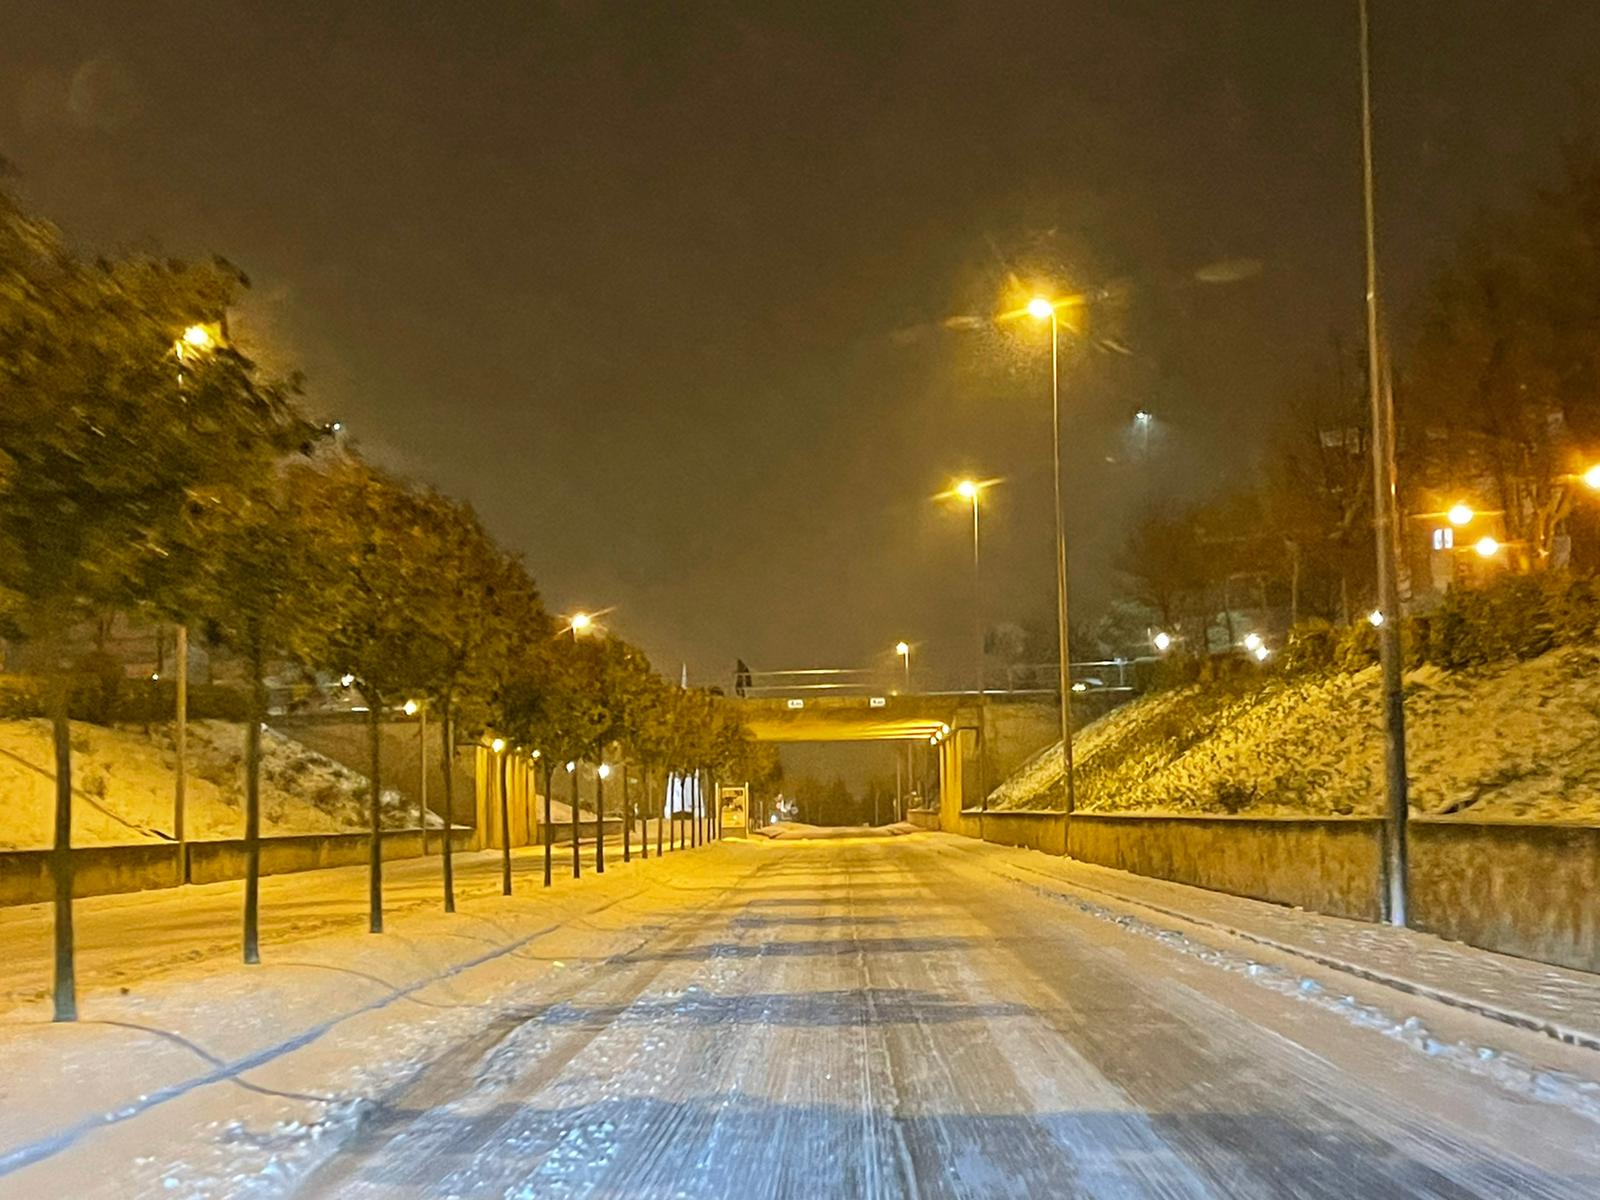 Nieve por las calles de Salamanca sábado noche (11)